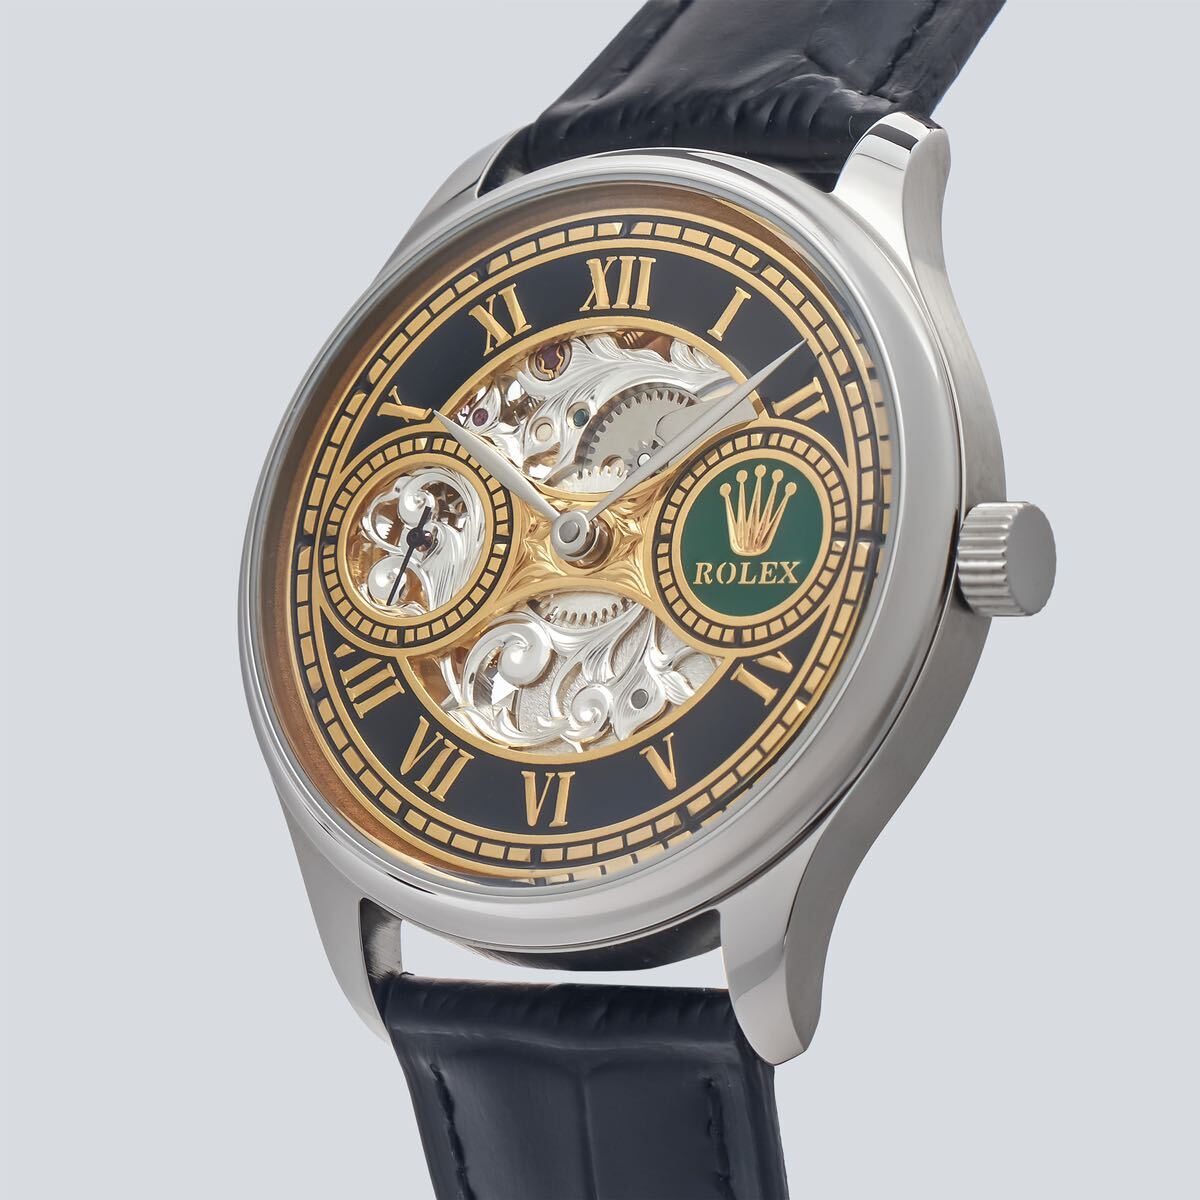 Antique Marriage Watch Rolex 44mm Men's Watch from Pocket Watch Hand-wound Skeleton